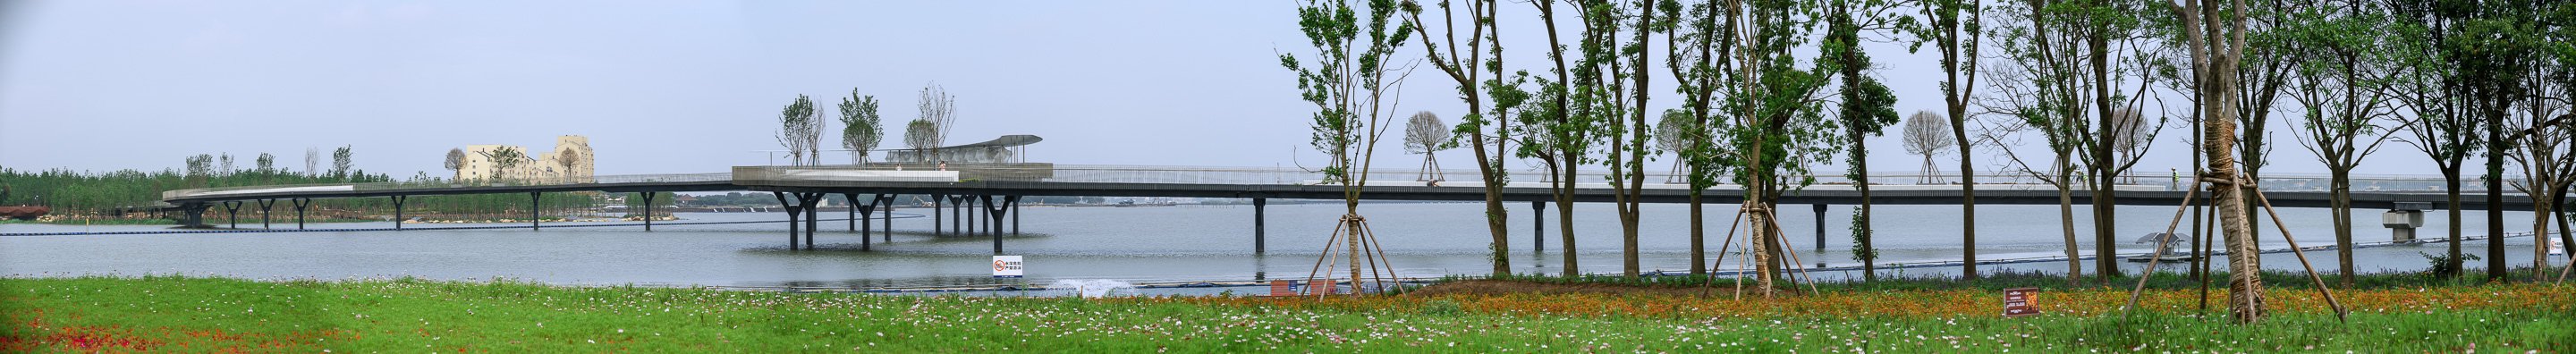 元荡桥丨Yuandang Bridge-26